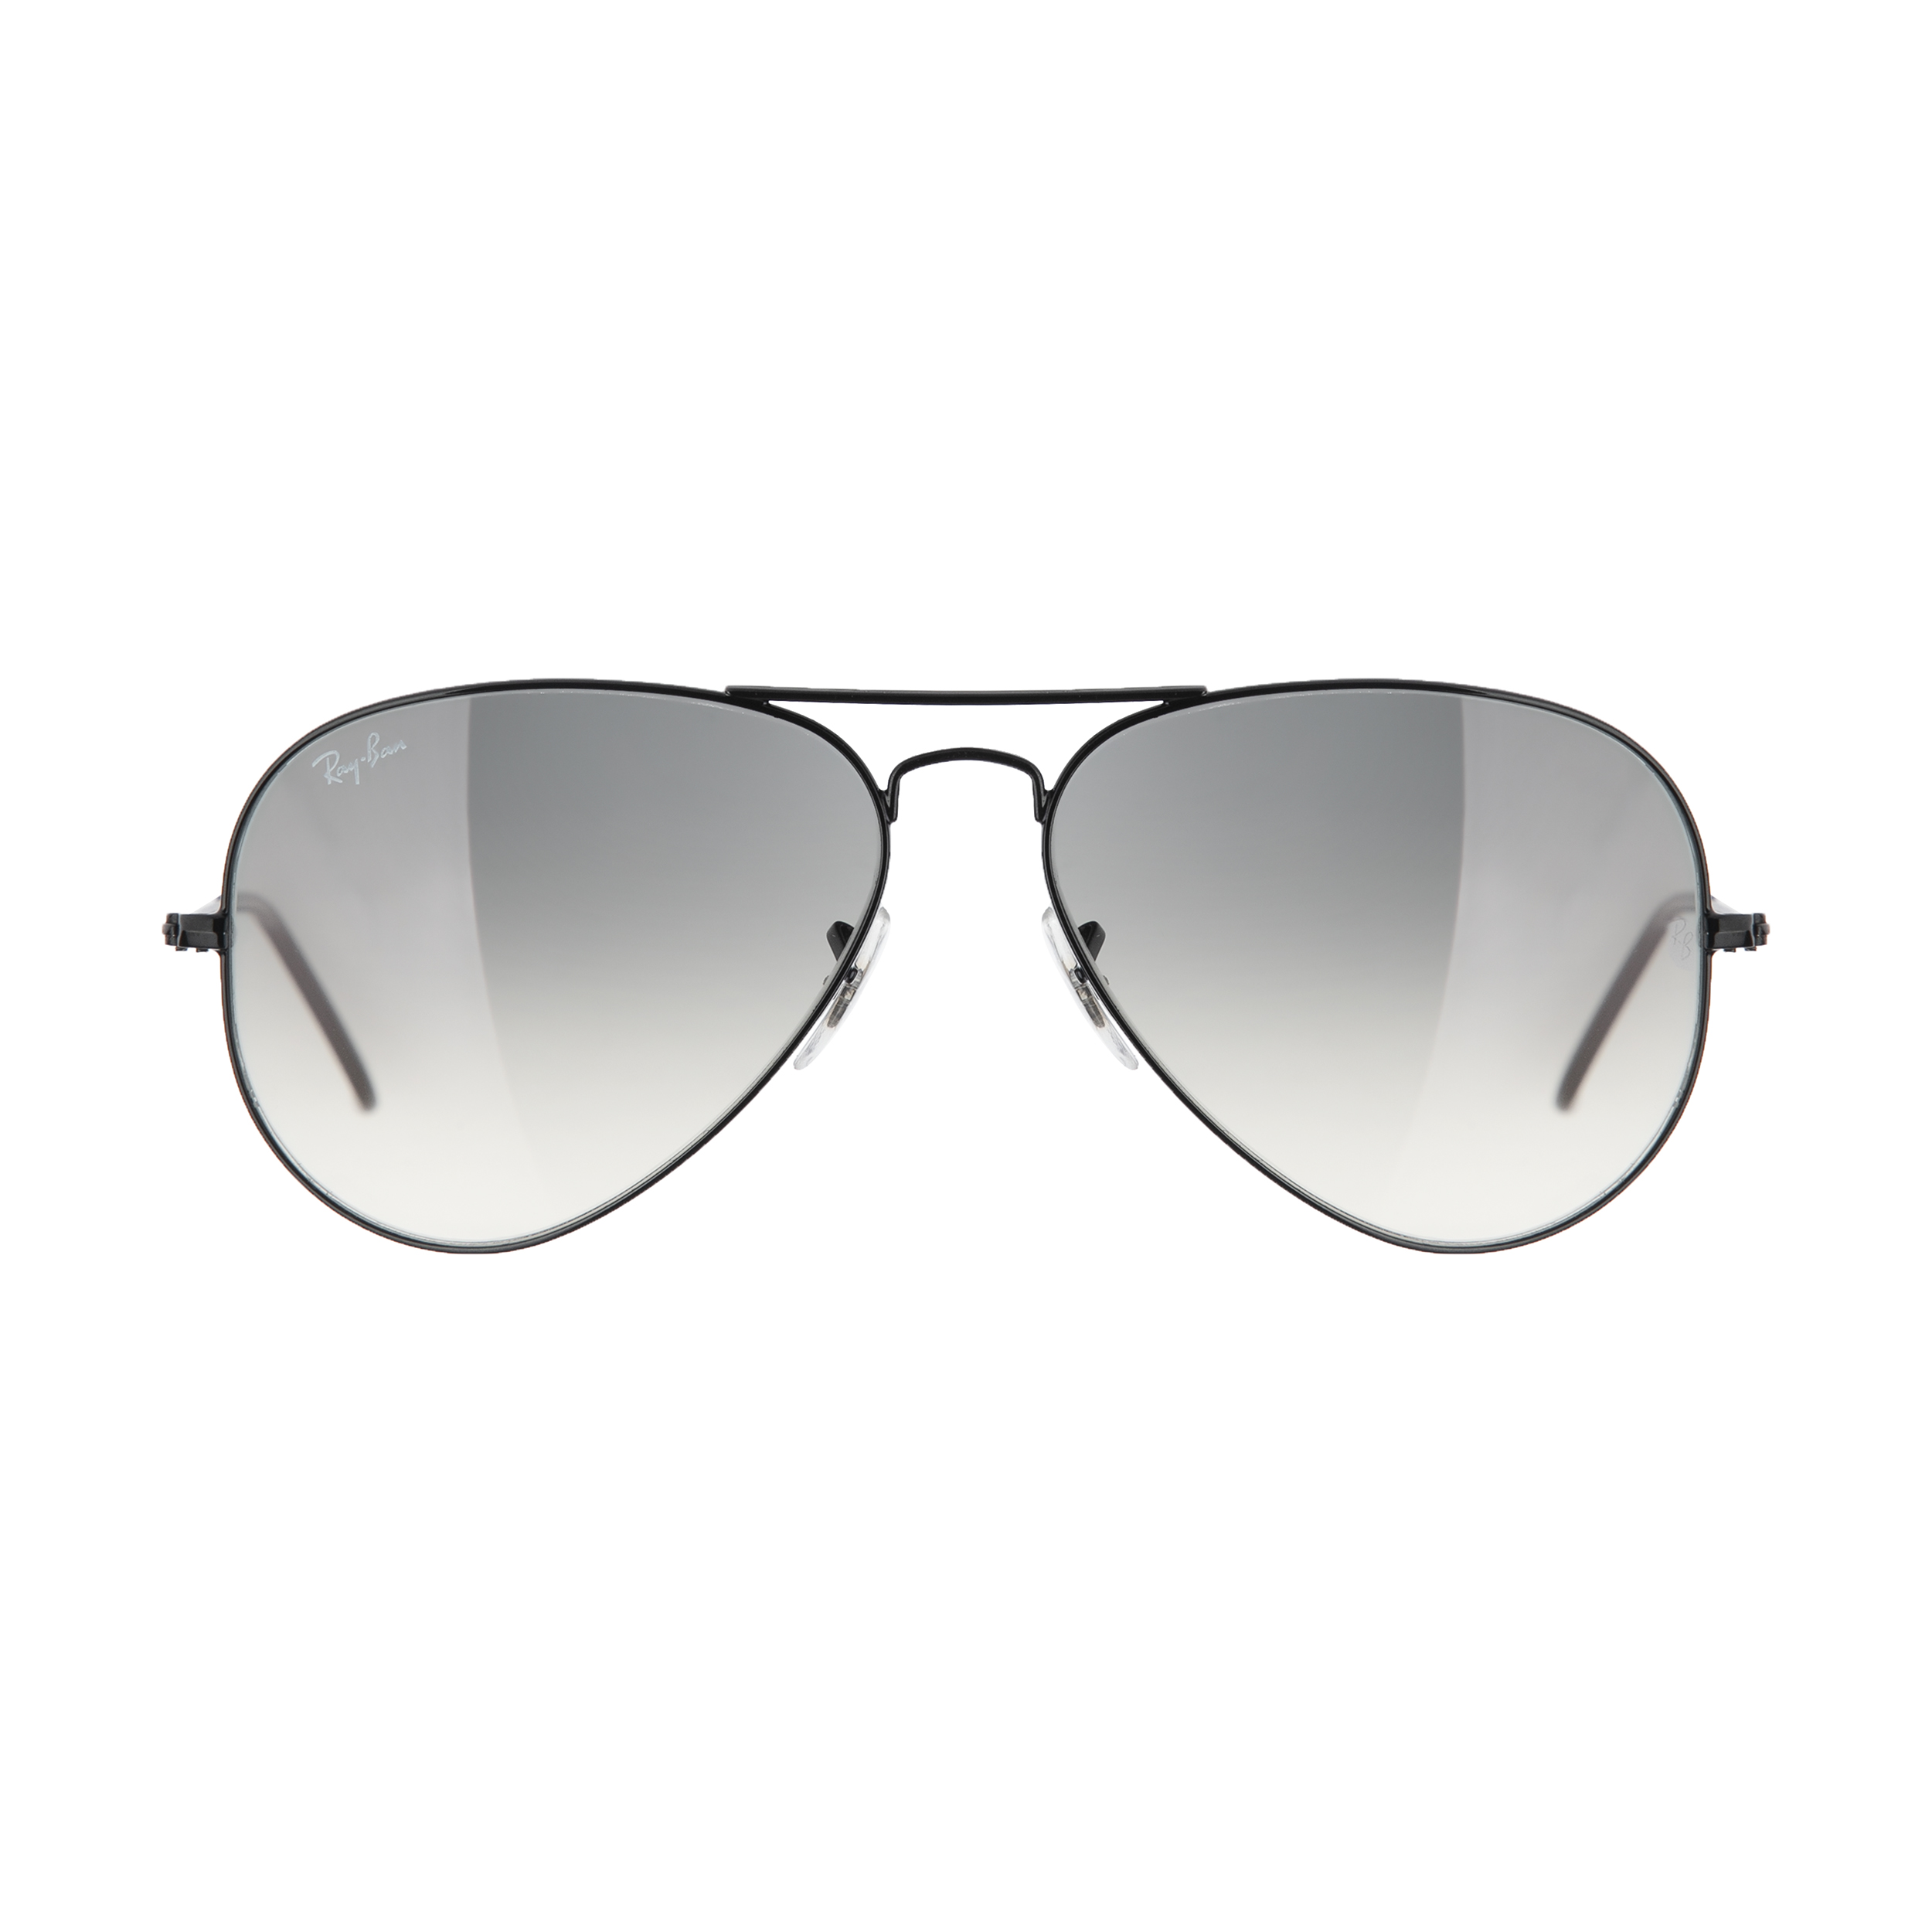 عینک آفتابی ری بن مدل 002/32-58 -  - 1